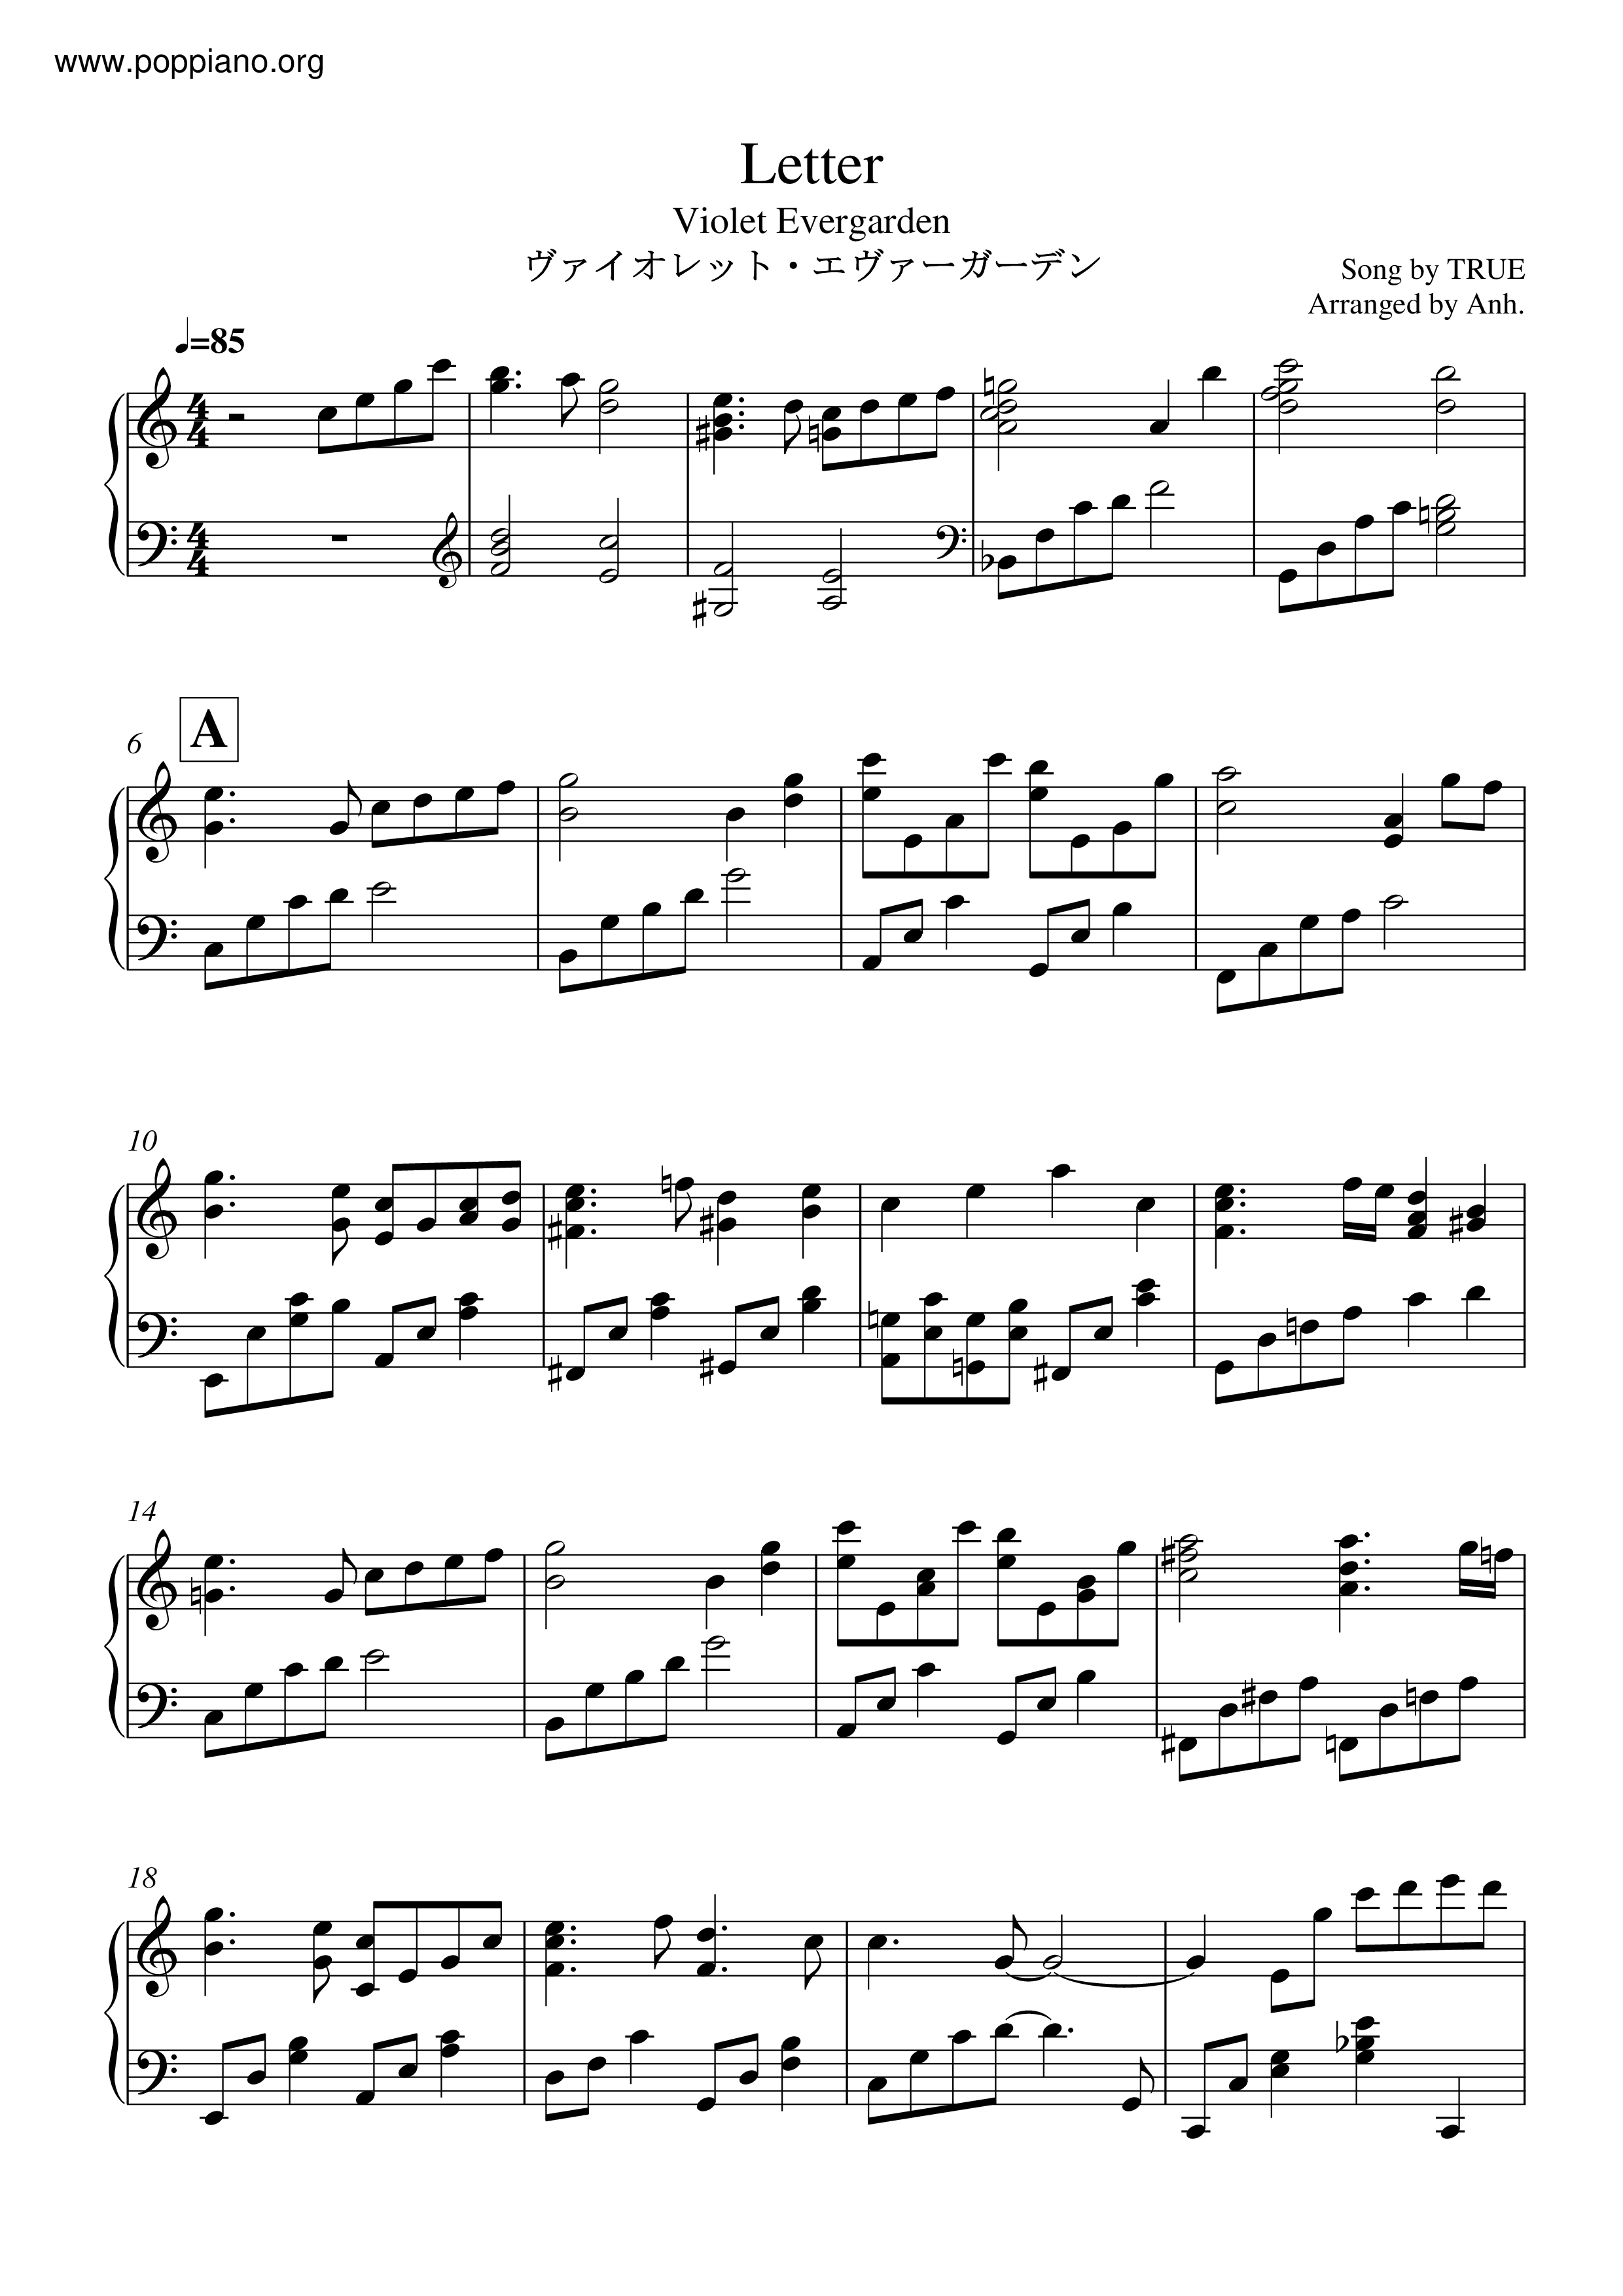 Violet Evergarden - Letter Violetピアノ譜